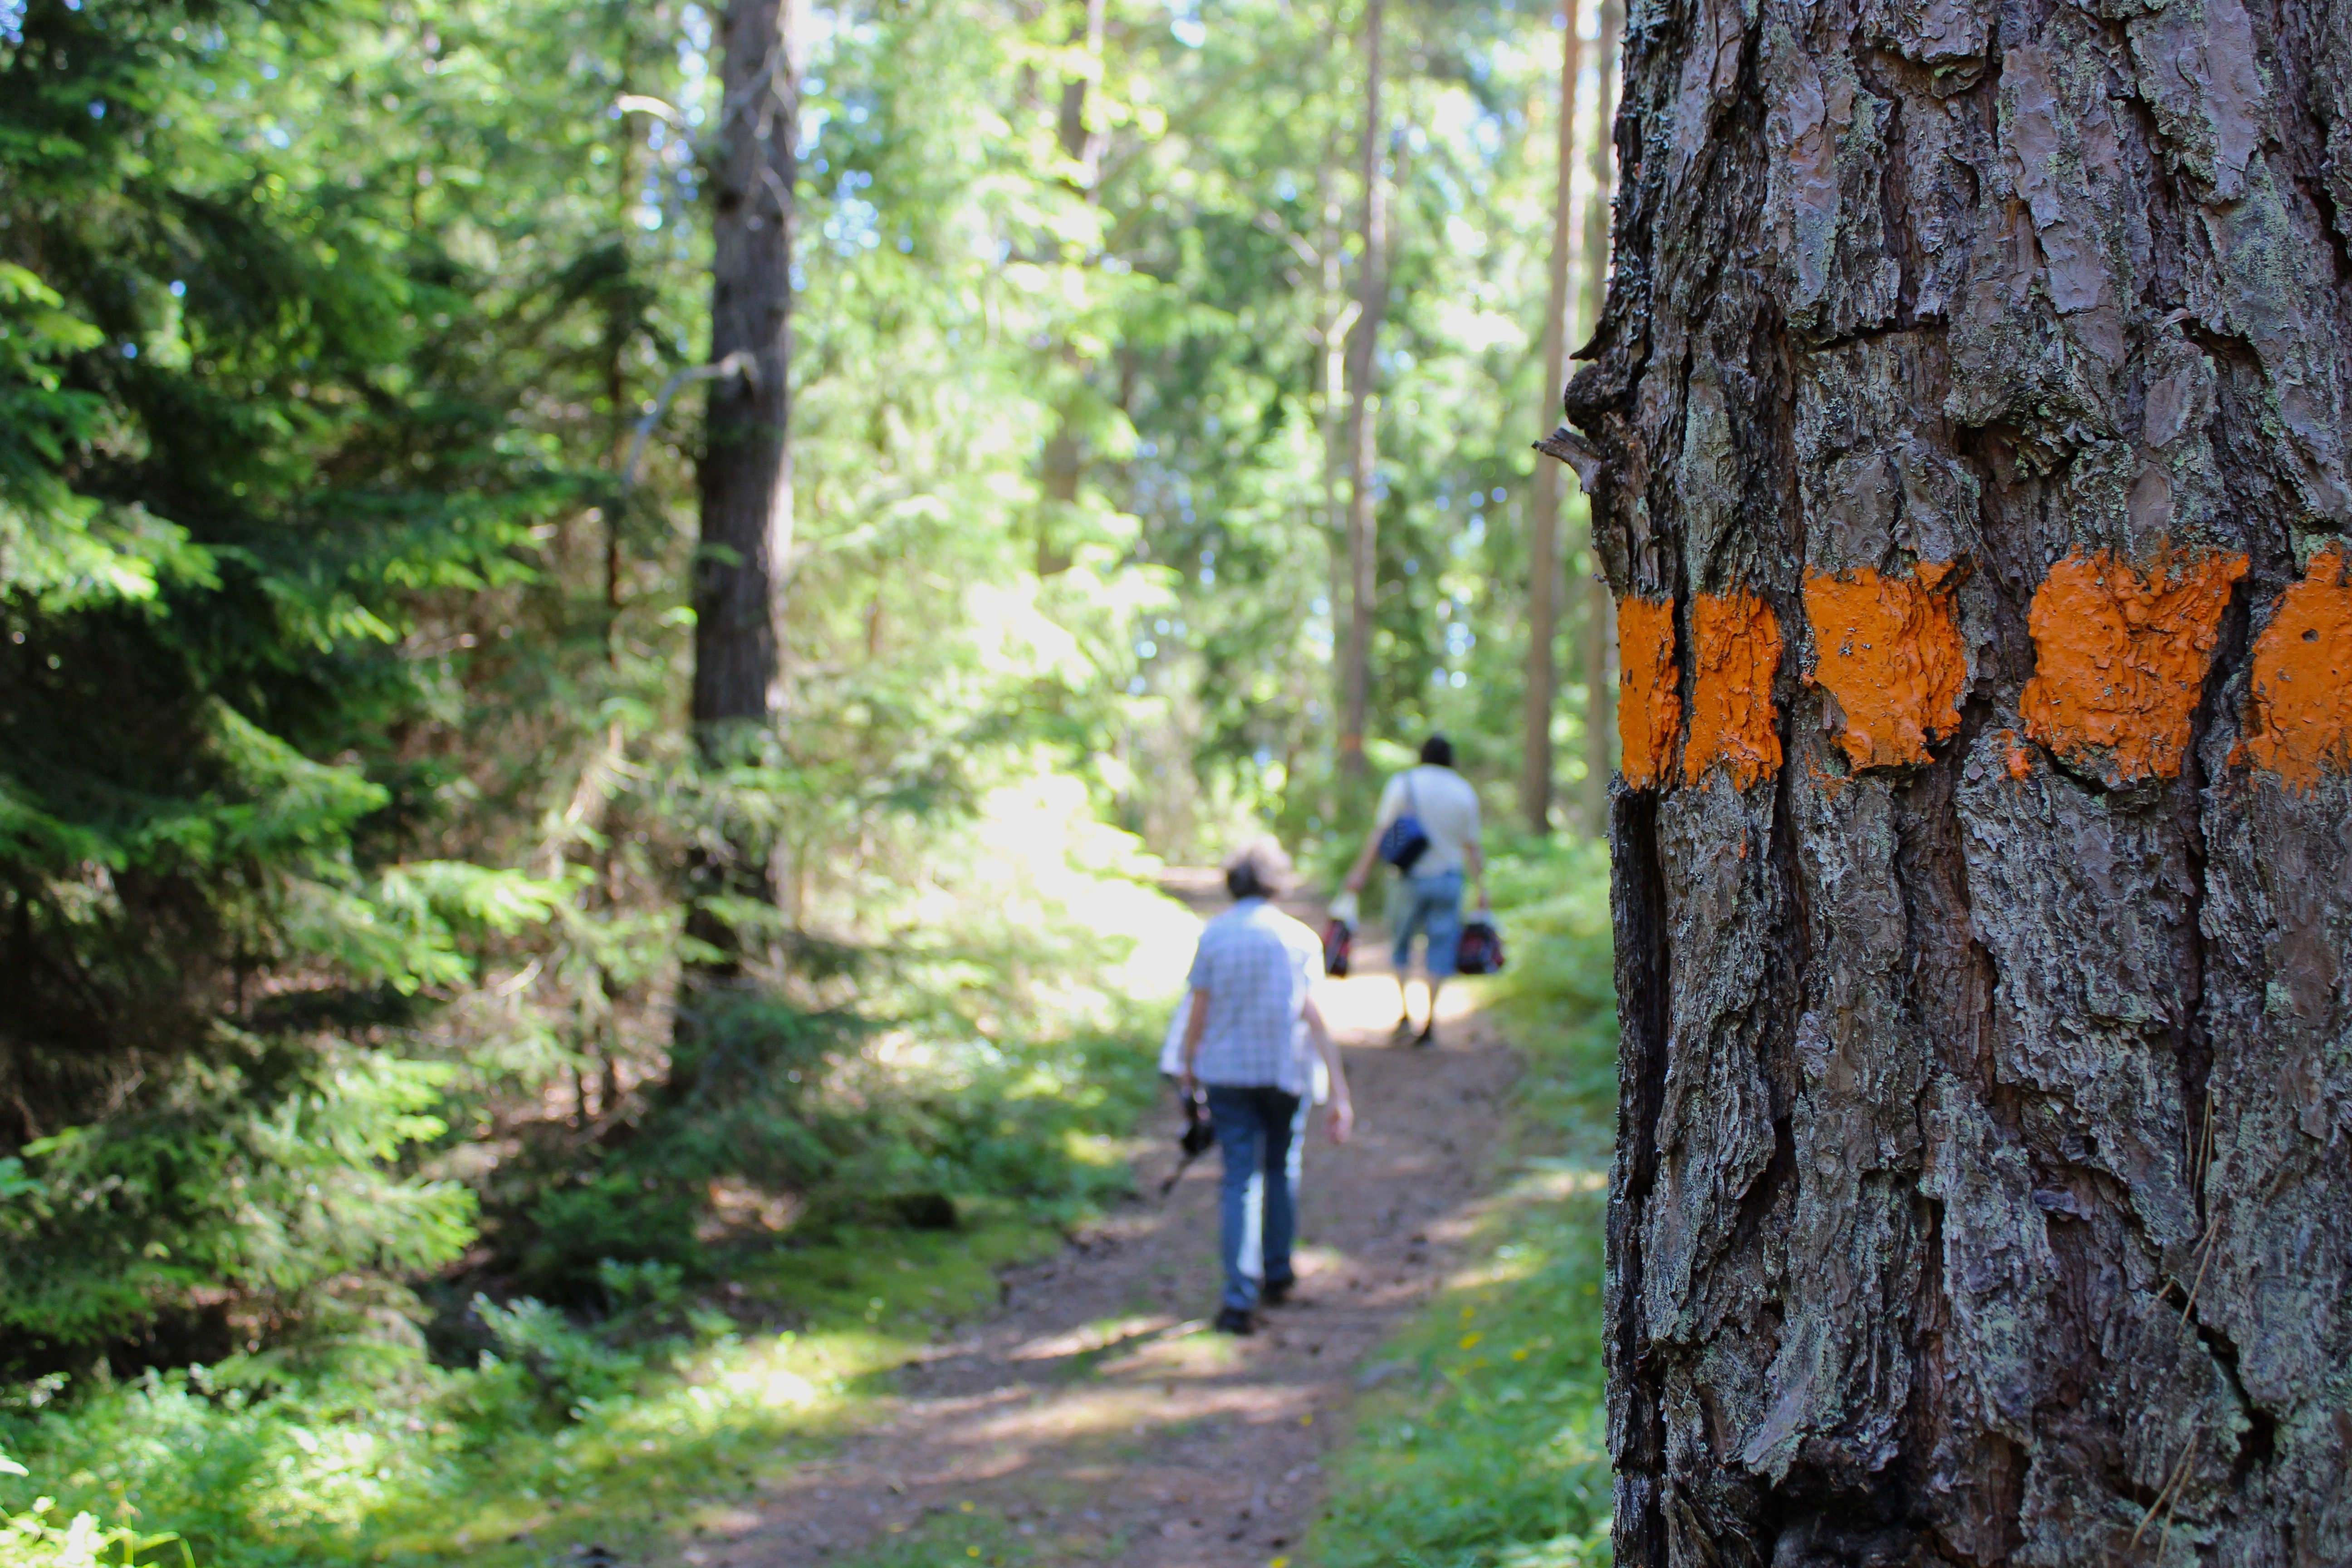 Två vuxna vandrar på en stig i skogen. En orange ledmarkering är målad på trädet i förgrunden.